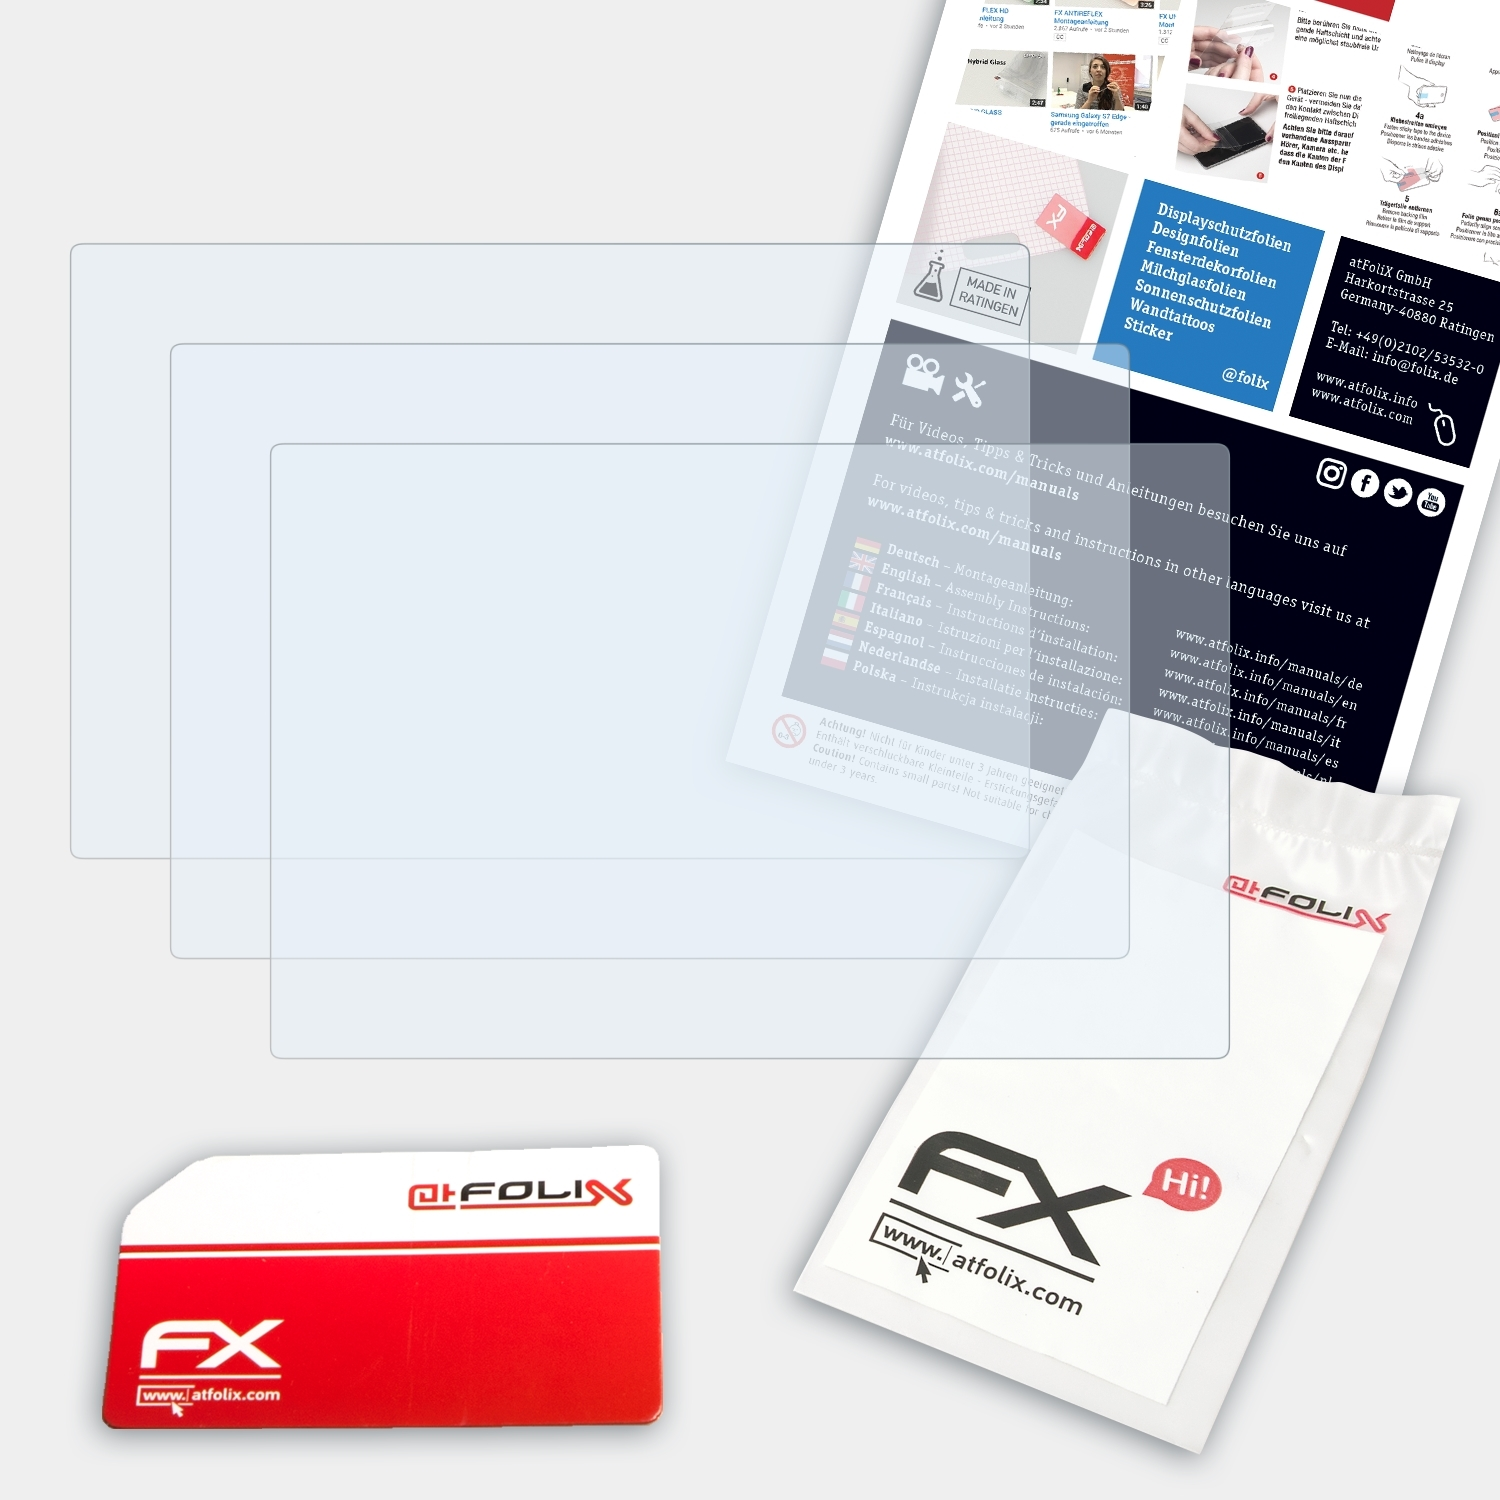 FX-Clear Lumix DMC-TZ91) Displayschutz(für ATFOLIX Panasonic 3x